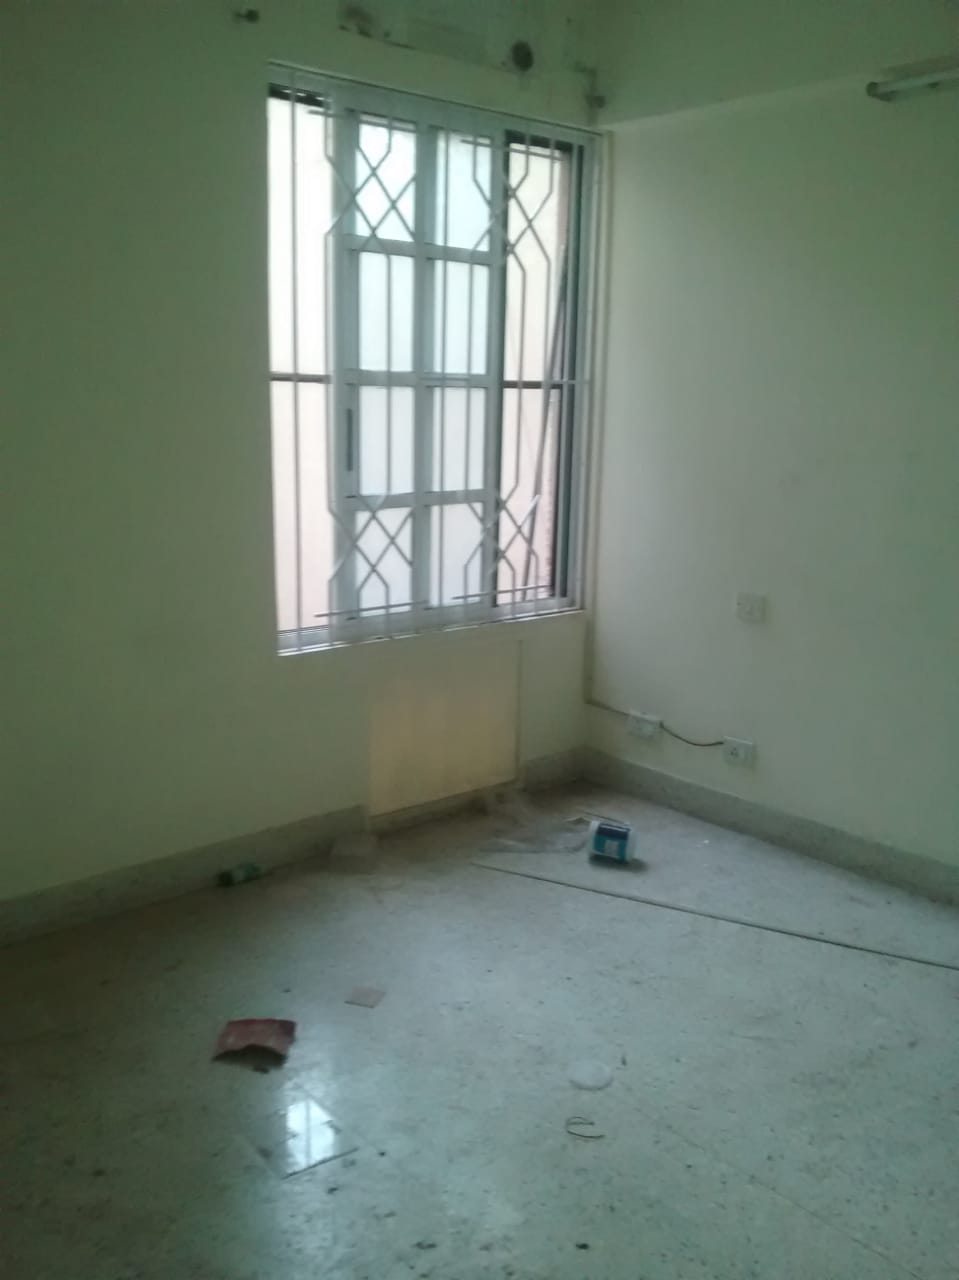 Ulsoor Road: Exclusive 3 bedroom flat for rent